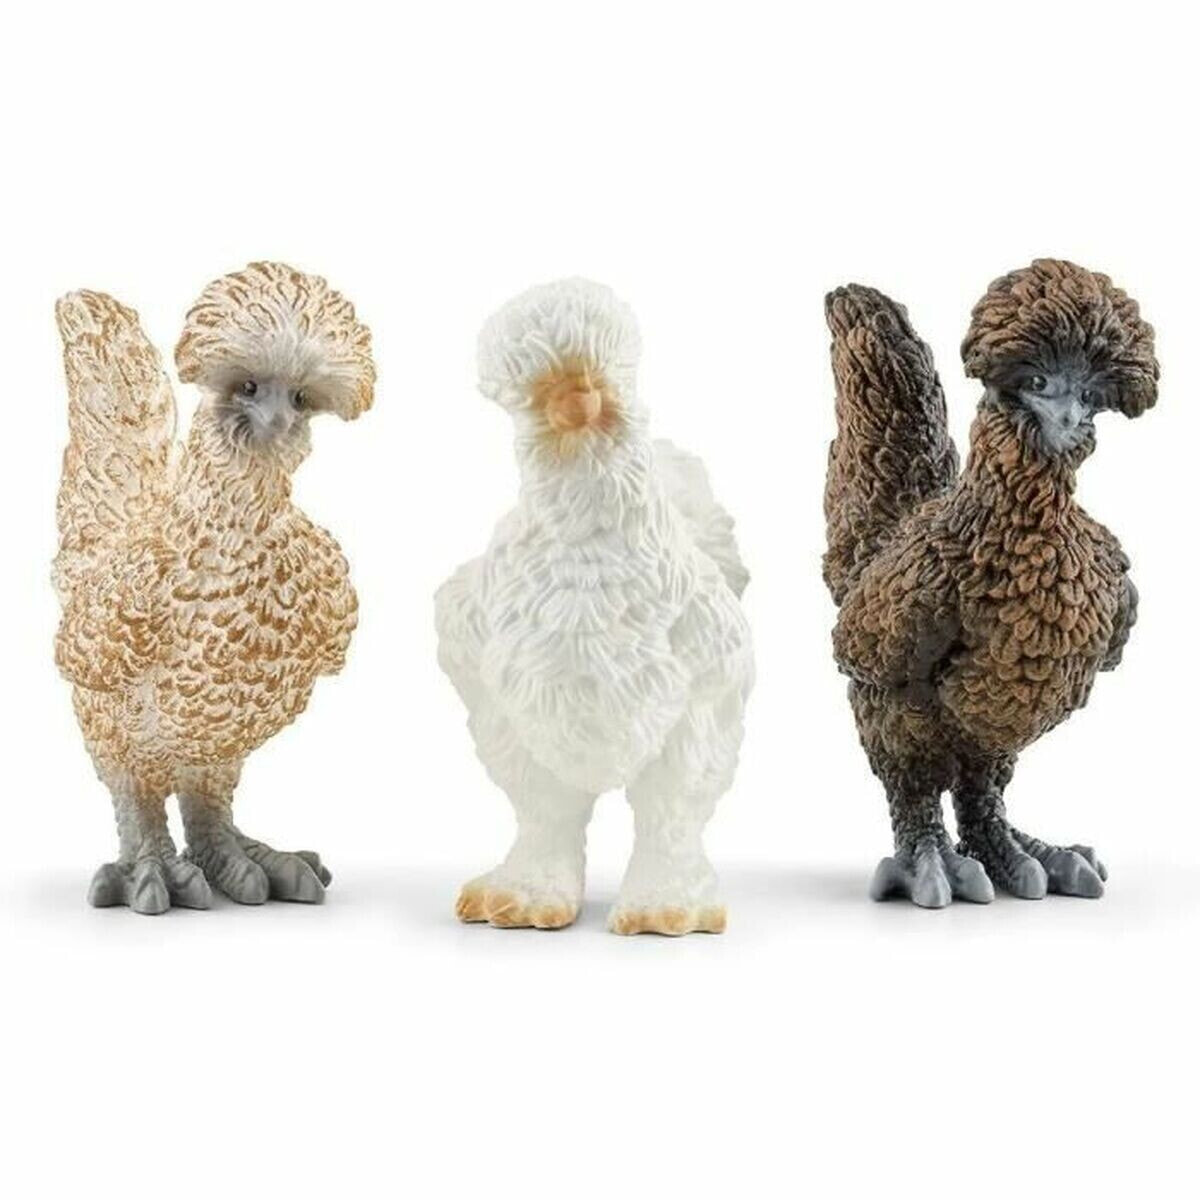 Set of Farm Animals Schleich Chicken Friends Plastic